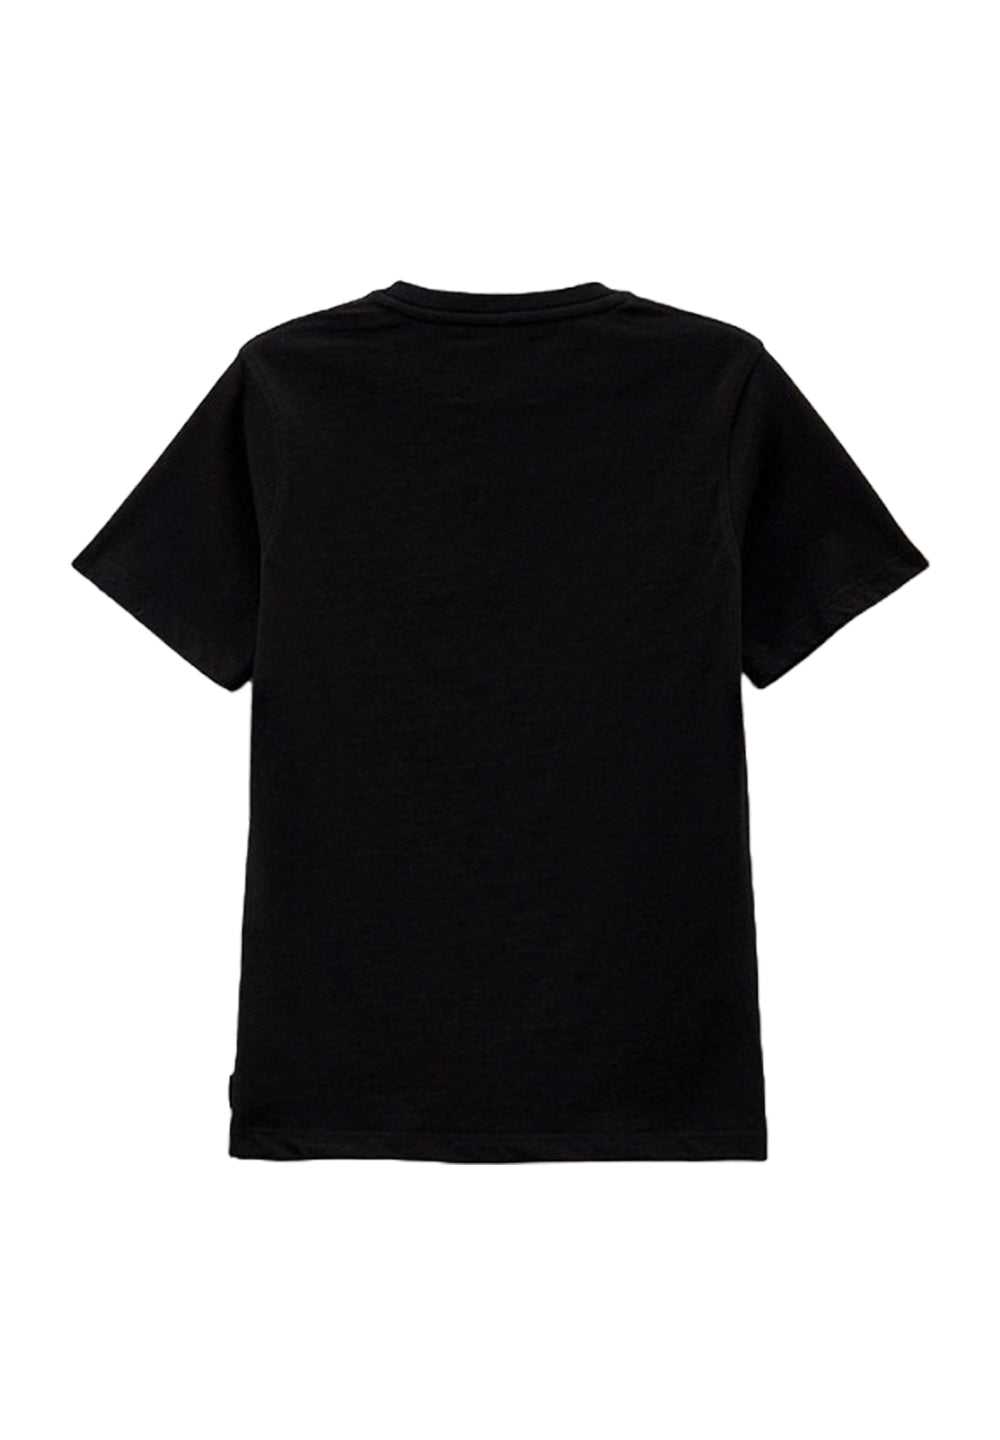 Schwarzes T-Shirt für Jungen